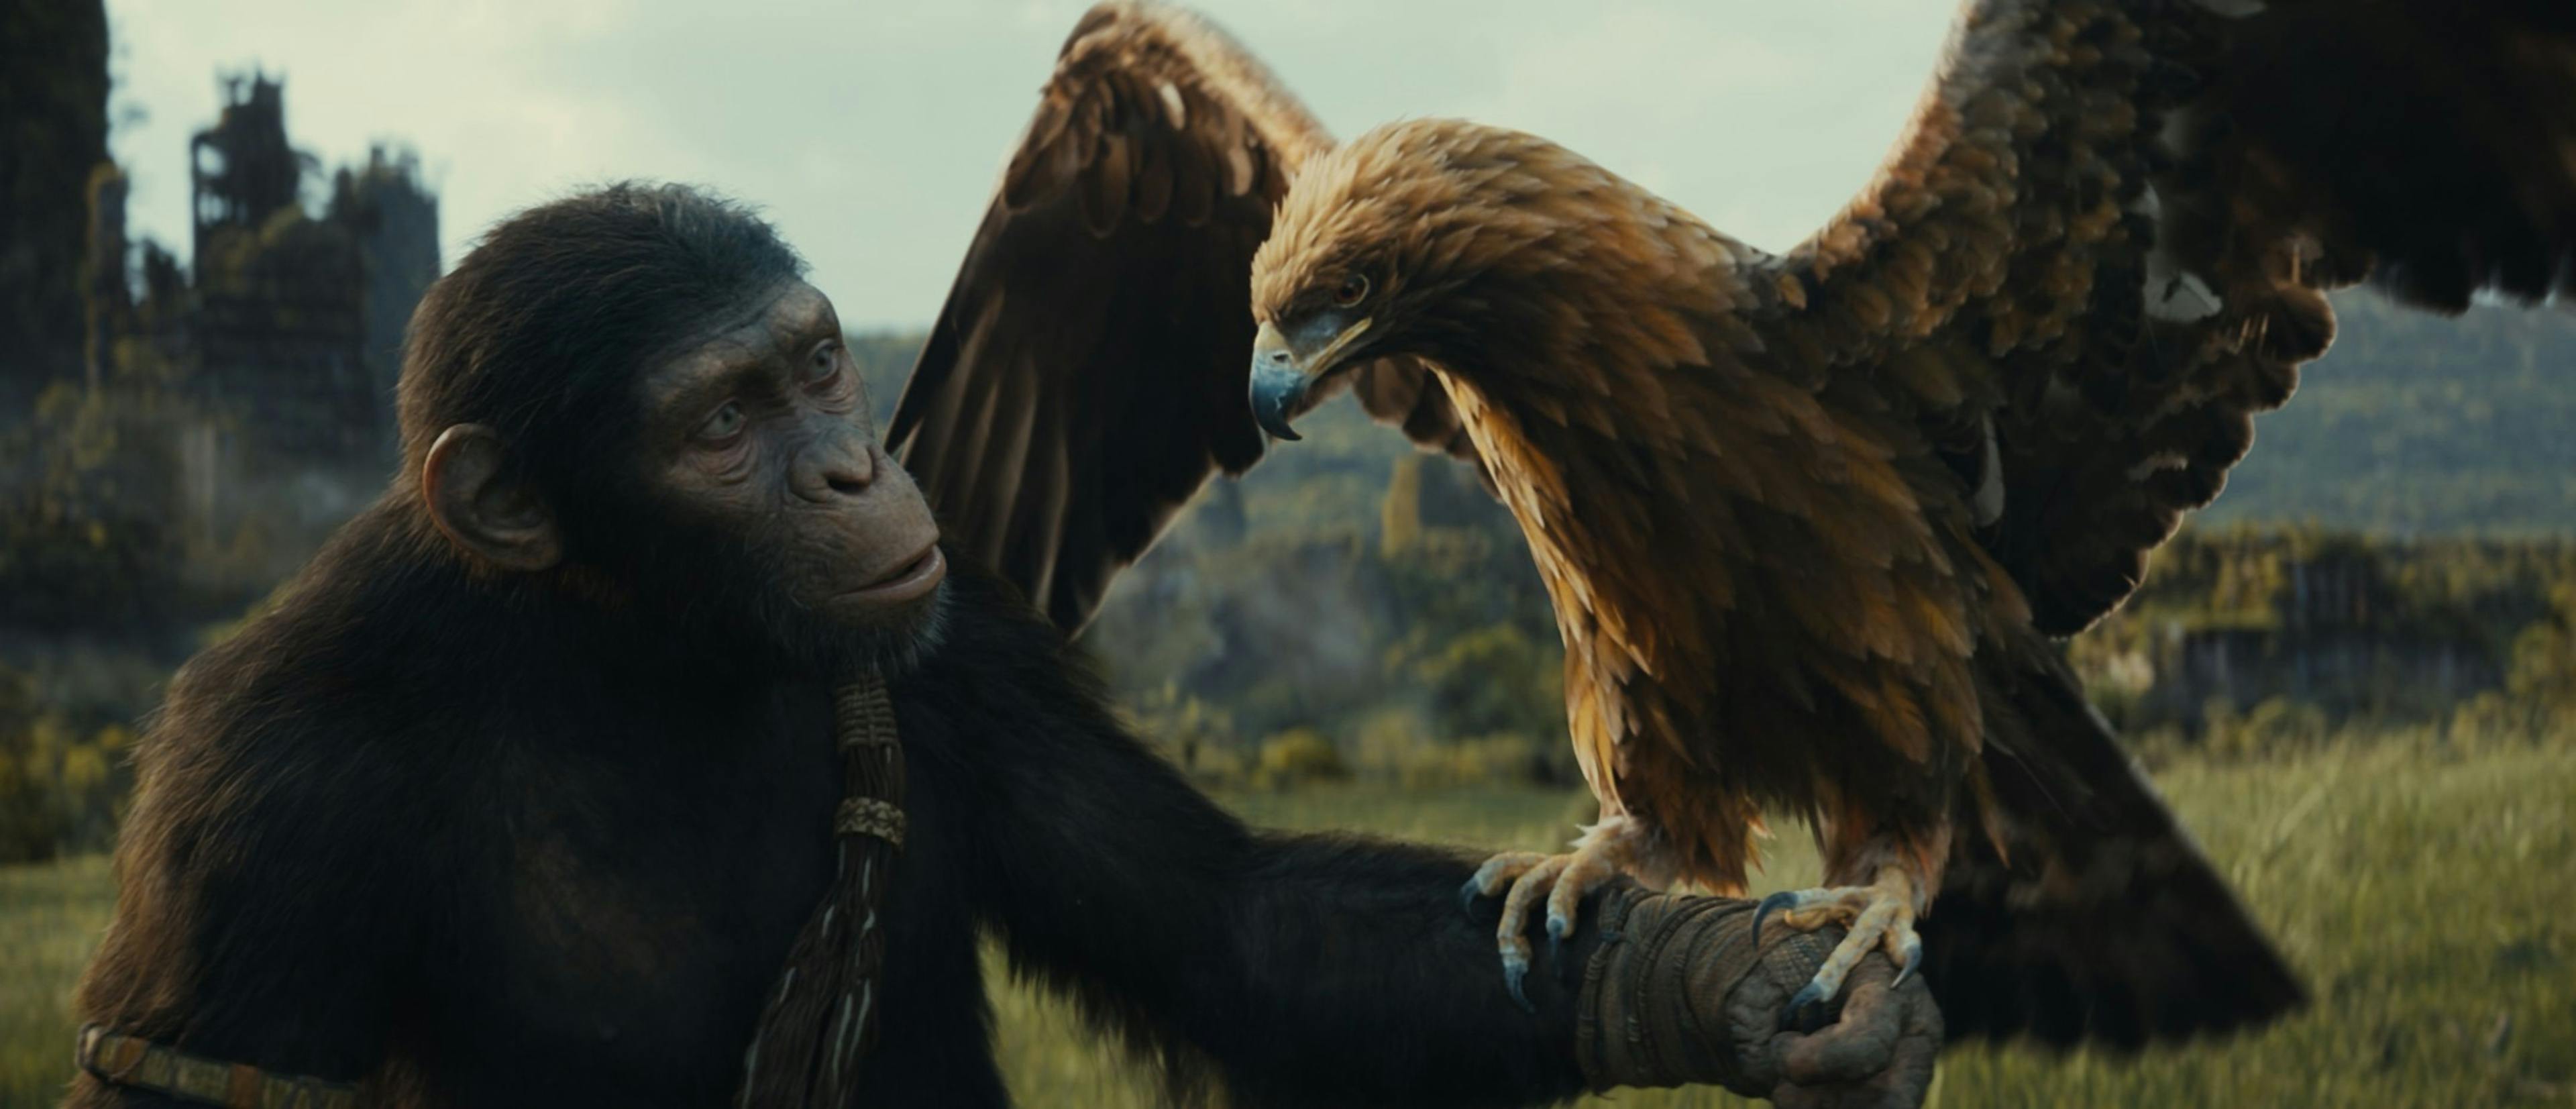 Noa (interpretada por Owen Teague) sujetando un águila en un fotograma promocional de 'El reino del planeta de los simios' 